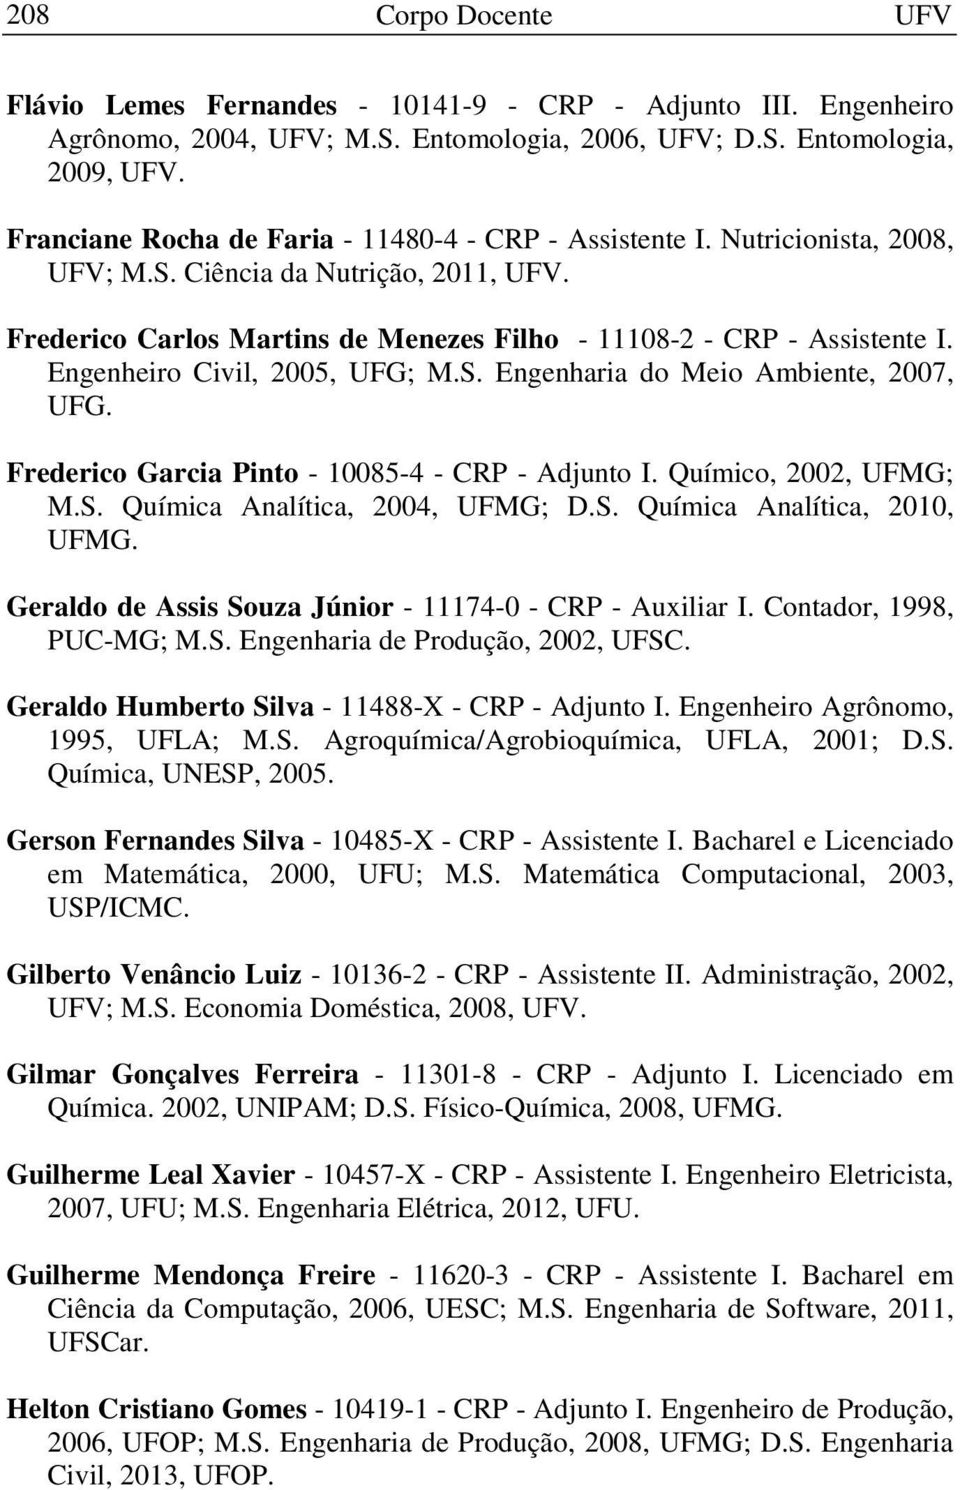 Engenheiro Civil, 2005, UFG; M.S. Engenharia do Meio Ambiente, 2007, UFG. Frederico Garcia Pinto - 10085-4 - CRP - Adjunto I. Químico, 2002, UFMG; M.S. Química Analítica, 2004, UFMG; D.S. Química Analítica, 2010, UFMG.